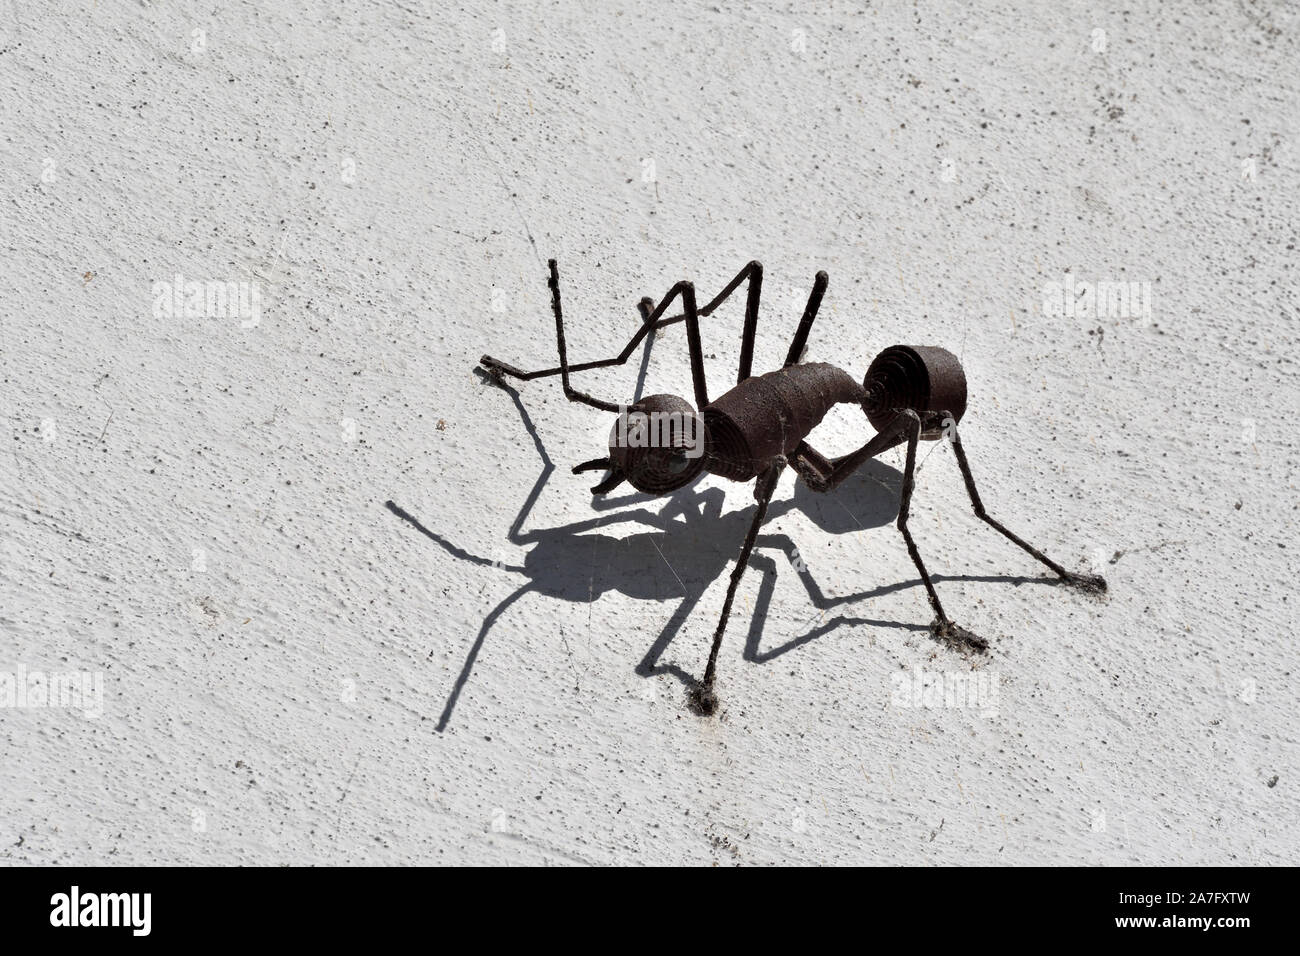 Las hormigas de metal gigante;el museo de historia natural;alfalfa;Suiza Foto de stock